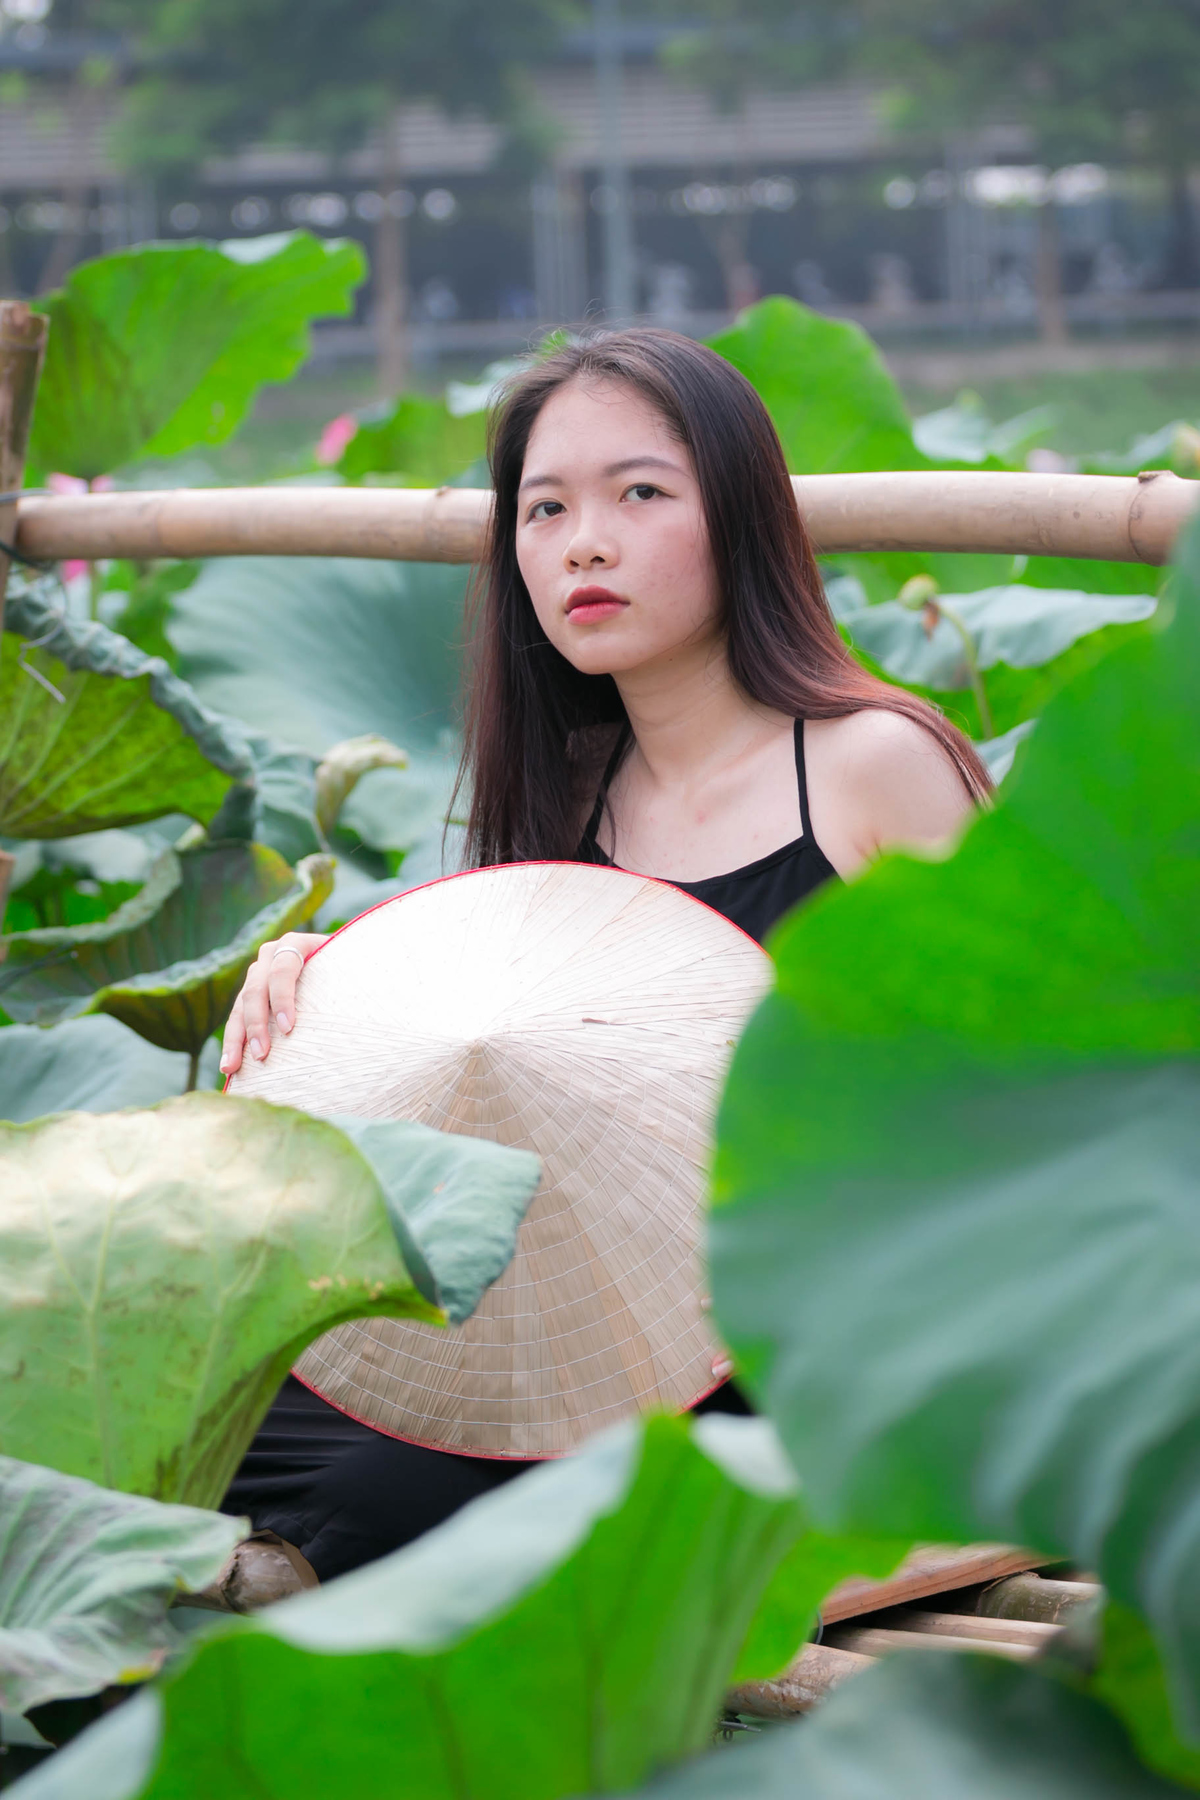 <div style="text-align:justify;"> Bóng hồng Mạc Thị Hạ, sinh viên năm cuối ĐH FPT, không thể cưỡng lại được vẻ đẹp và mùi hương thơm dịu nhẹ của hoa sen, có mặt từ sớm lưu lại những hình đẹp nhất. Hạ cho biết hiếm trường đại học nào ở Việt Nam có không gian xanh và rộng thoáng như ĐH FPT.</div>